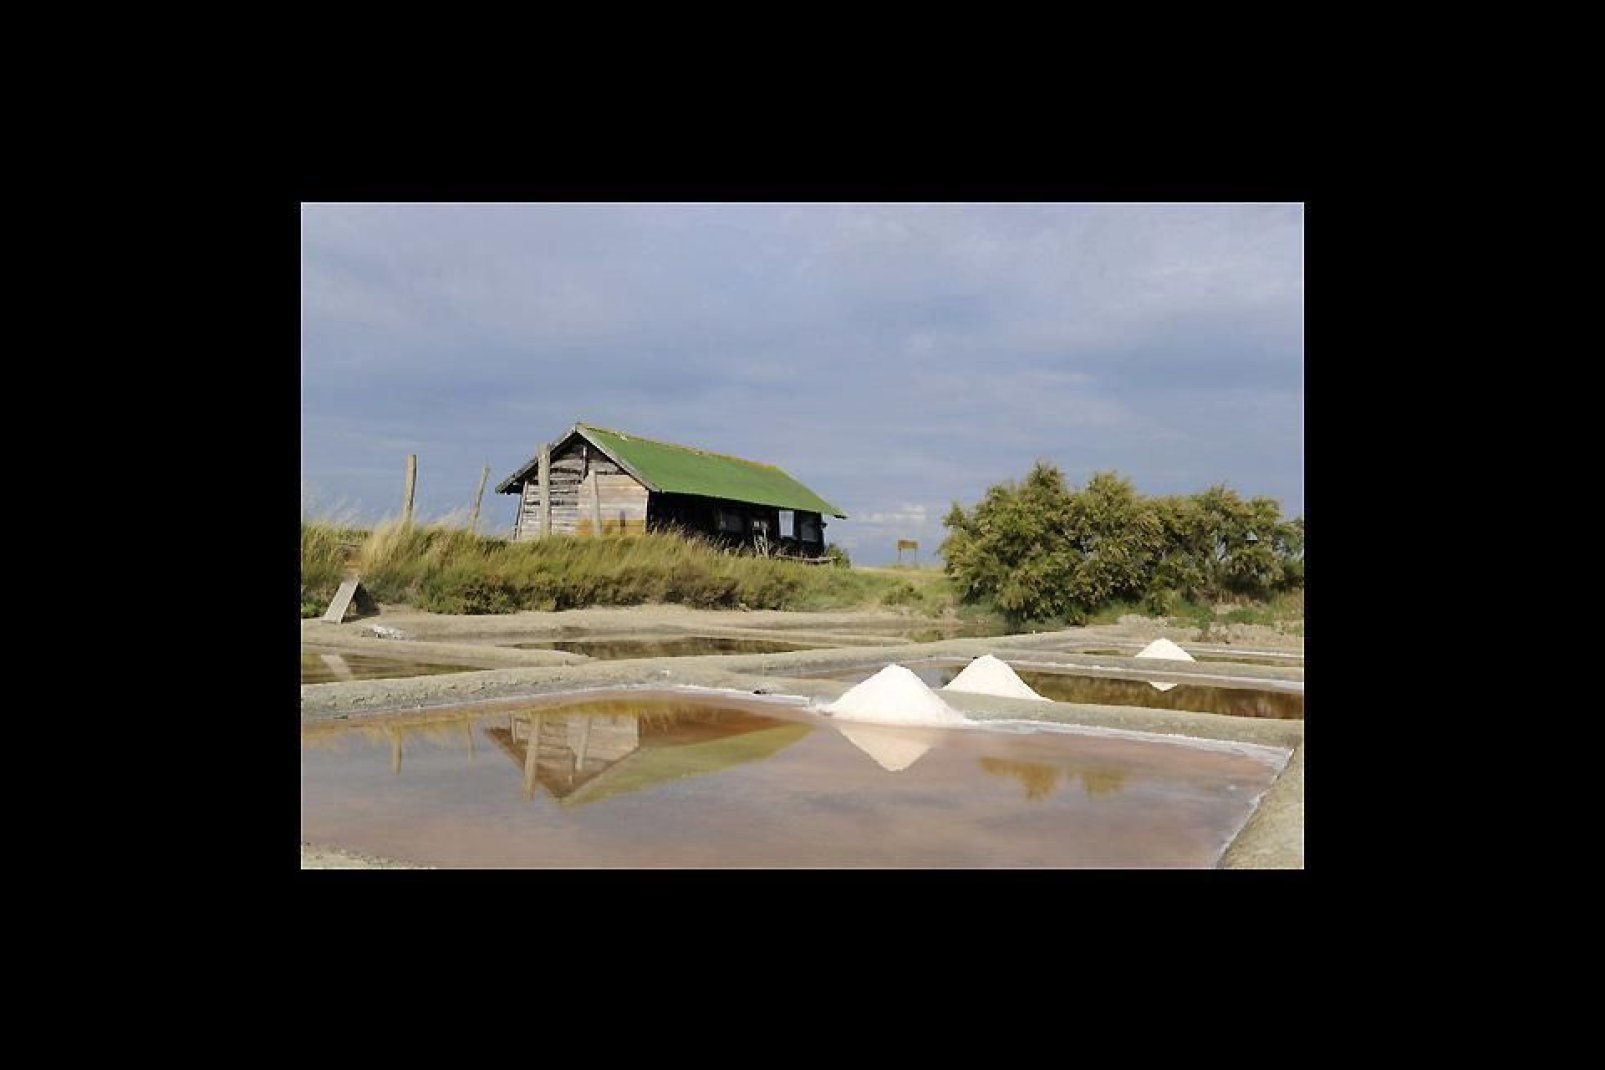 Einige Kilometer nördlich der Stadt befindet sich das Naturschutzgebiet der Salinen, wo man den Salzbauern bei der Salzernte zusehen kann.